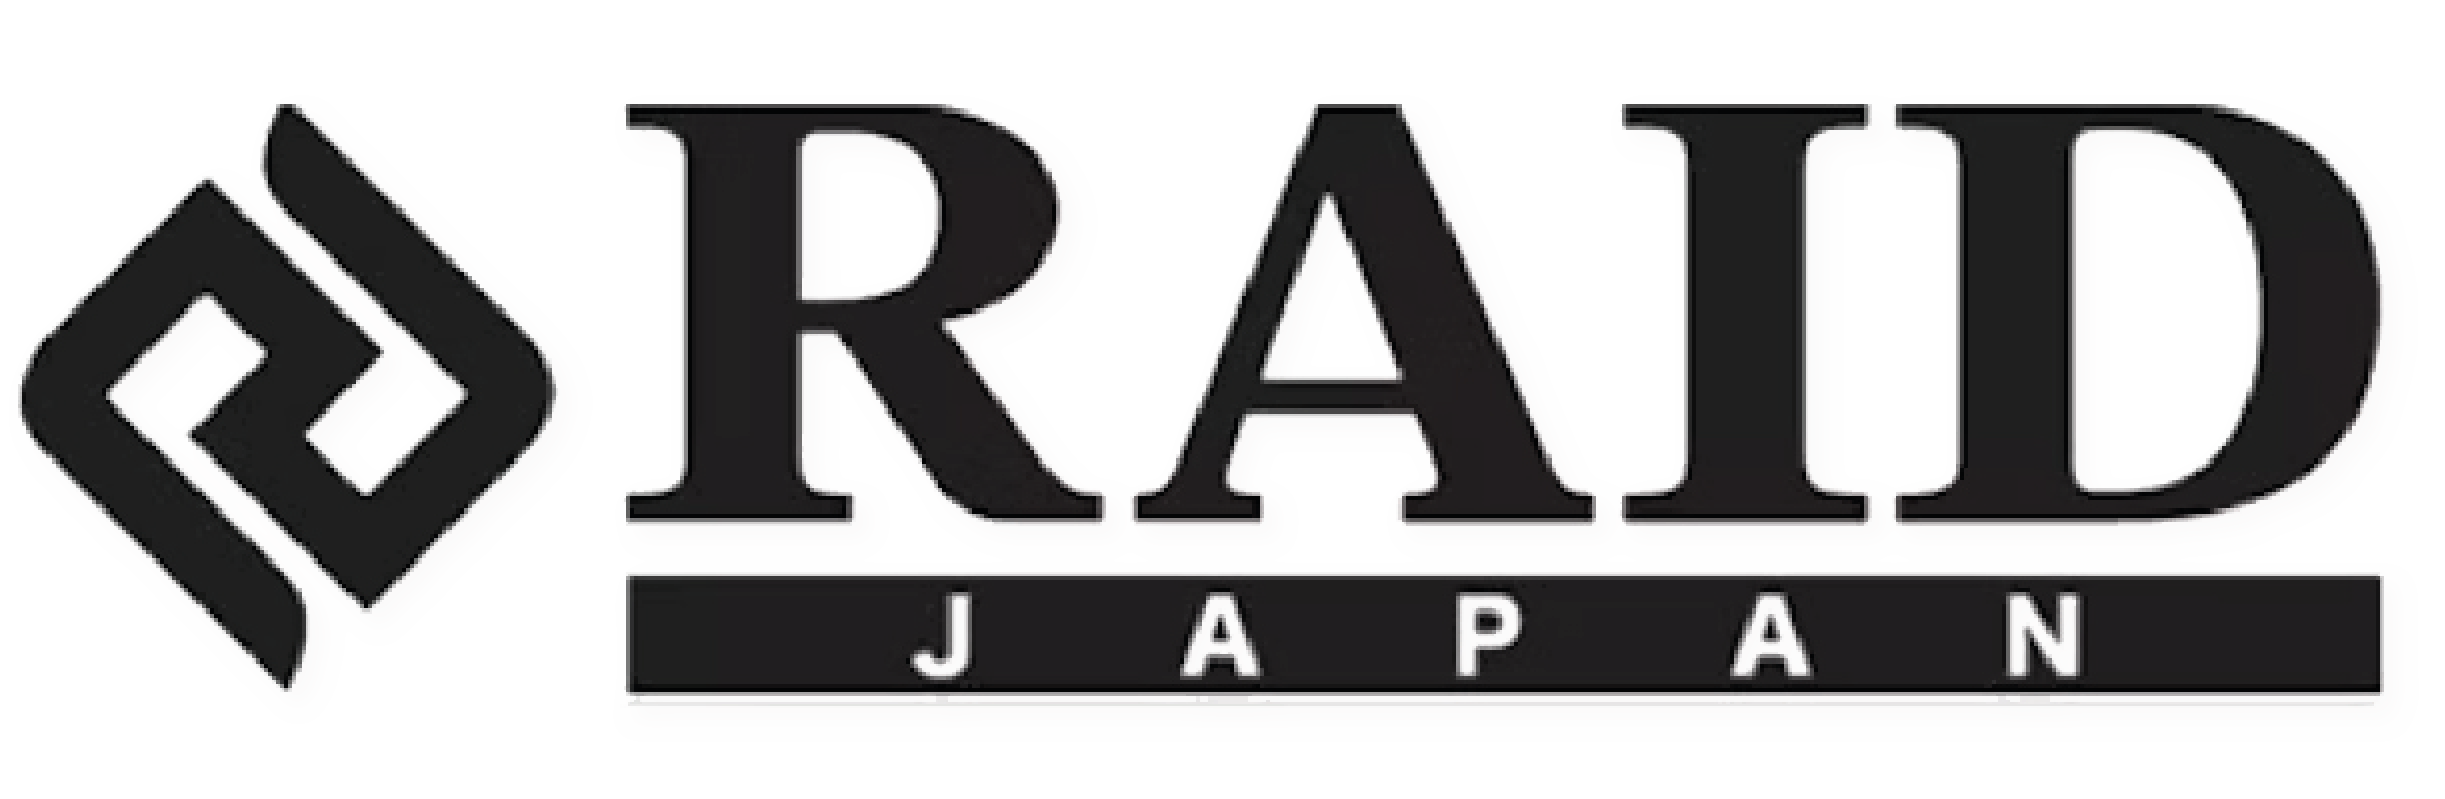 RAID JAPAN